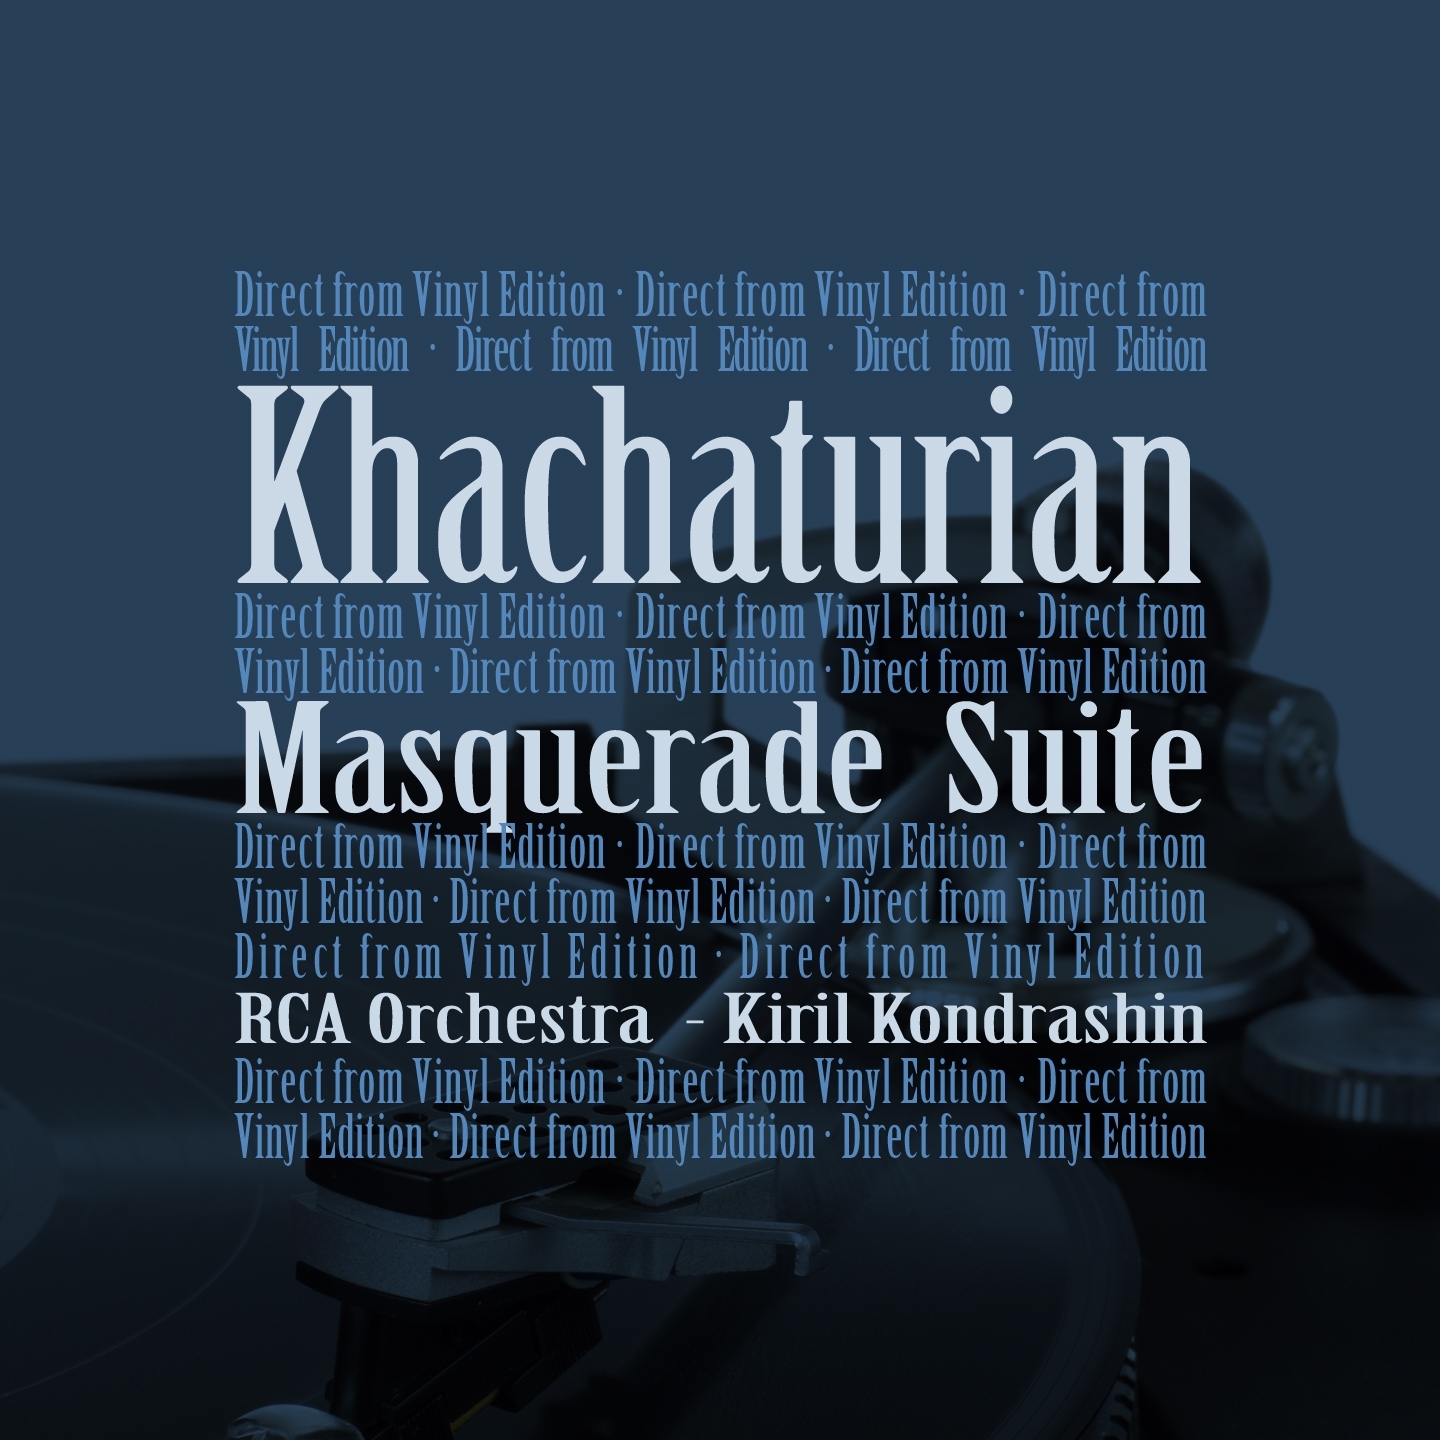 Khachaturian: Masquerade Suite